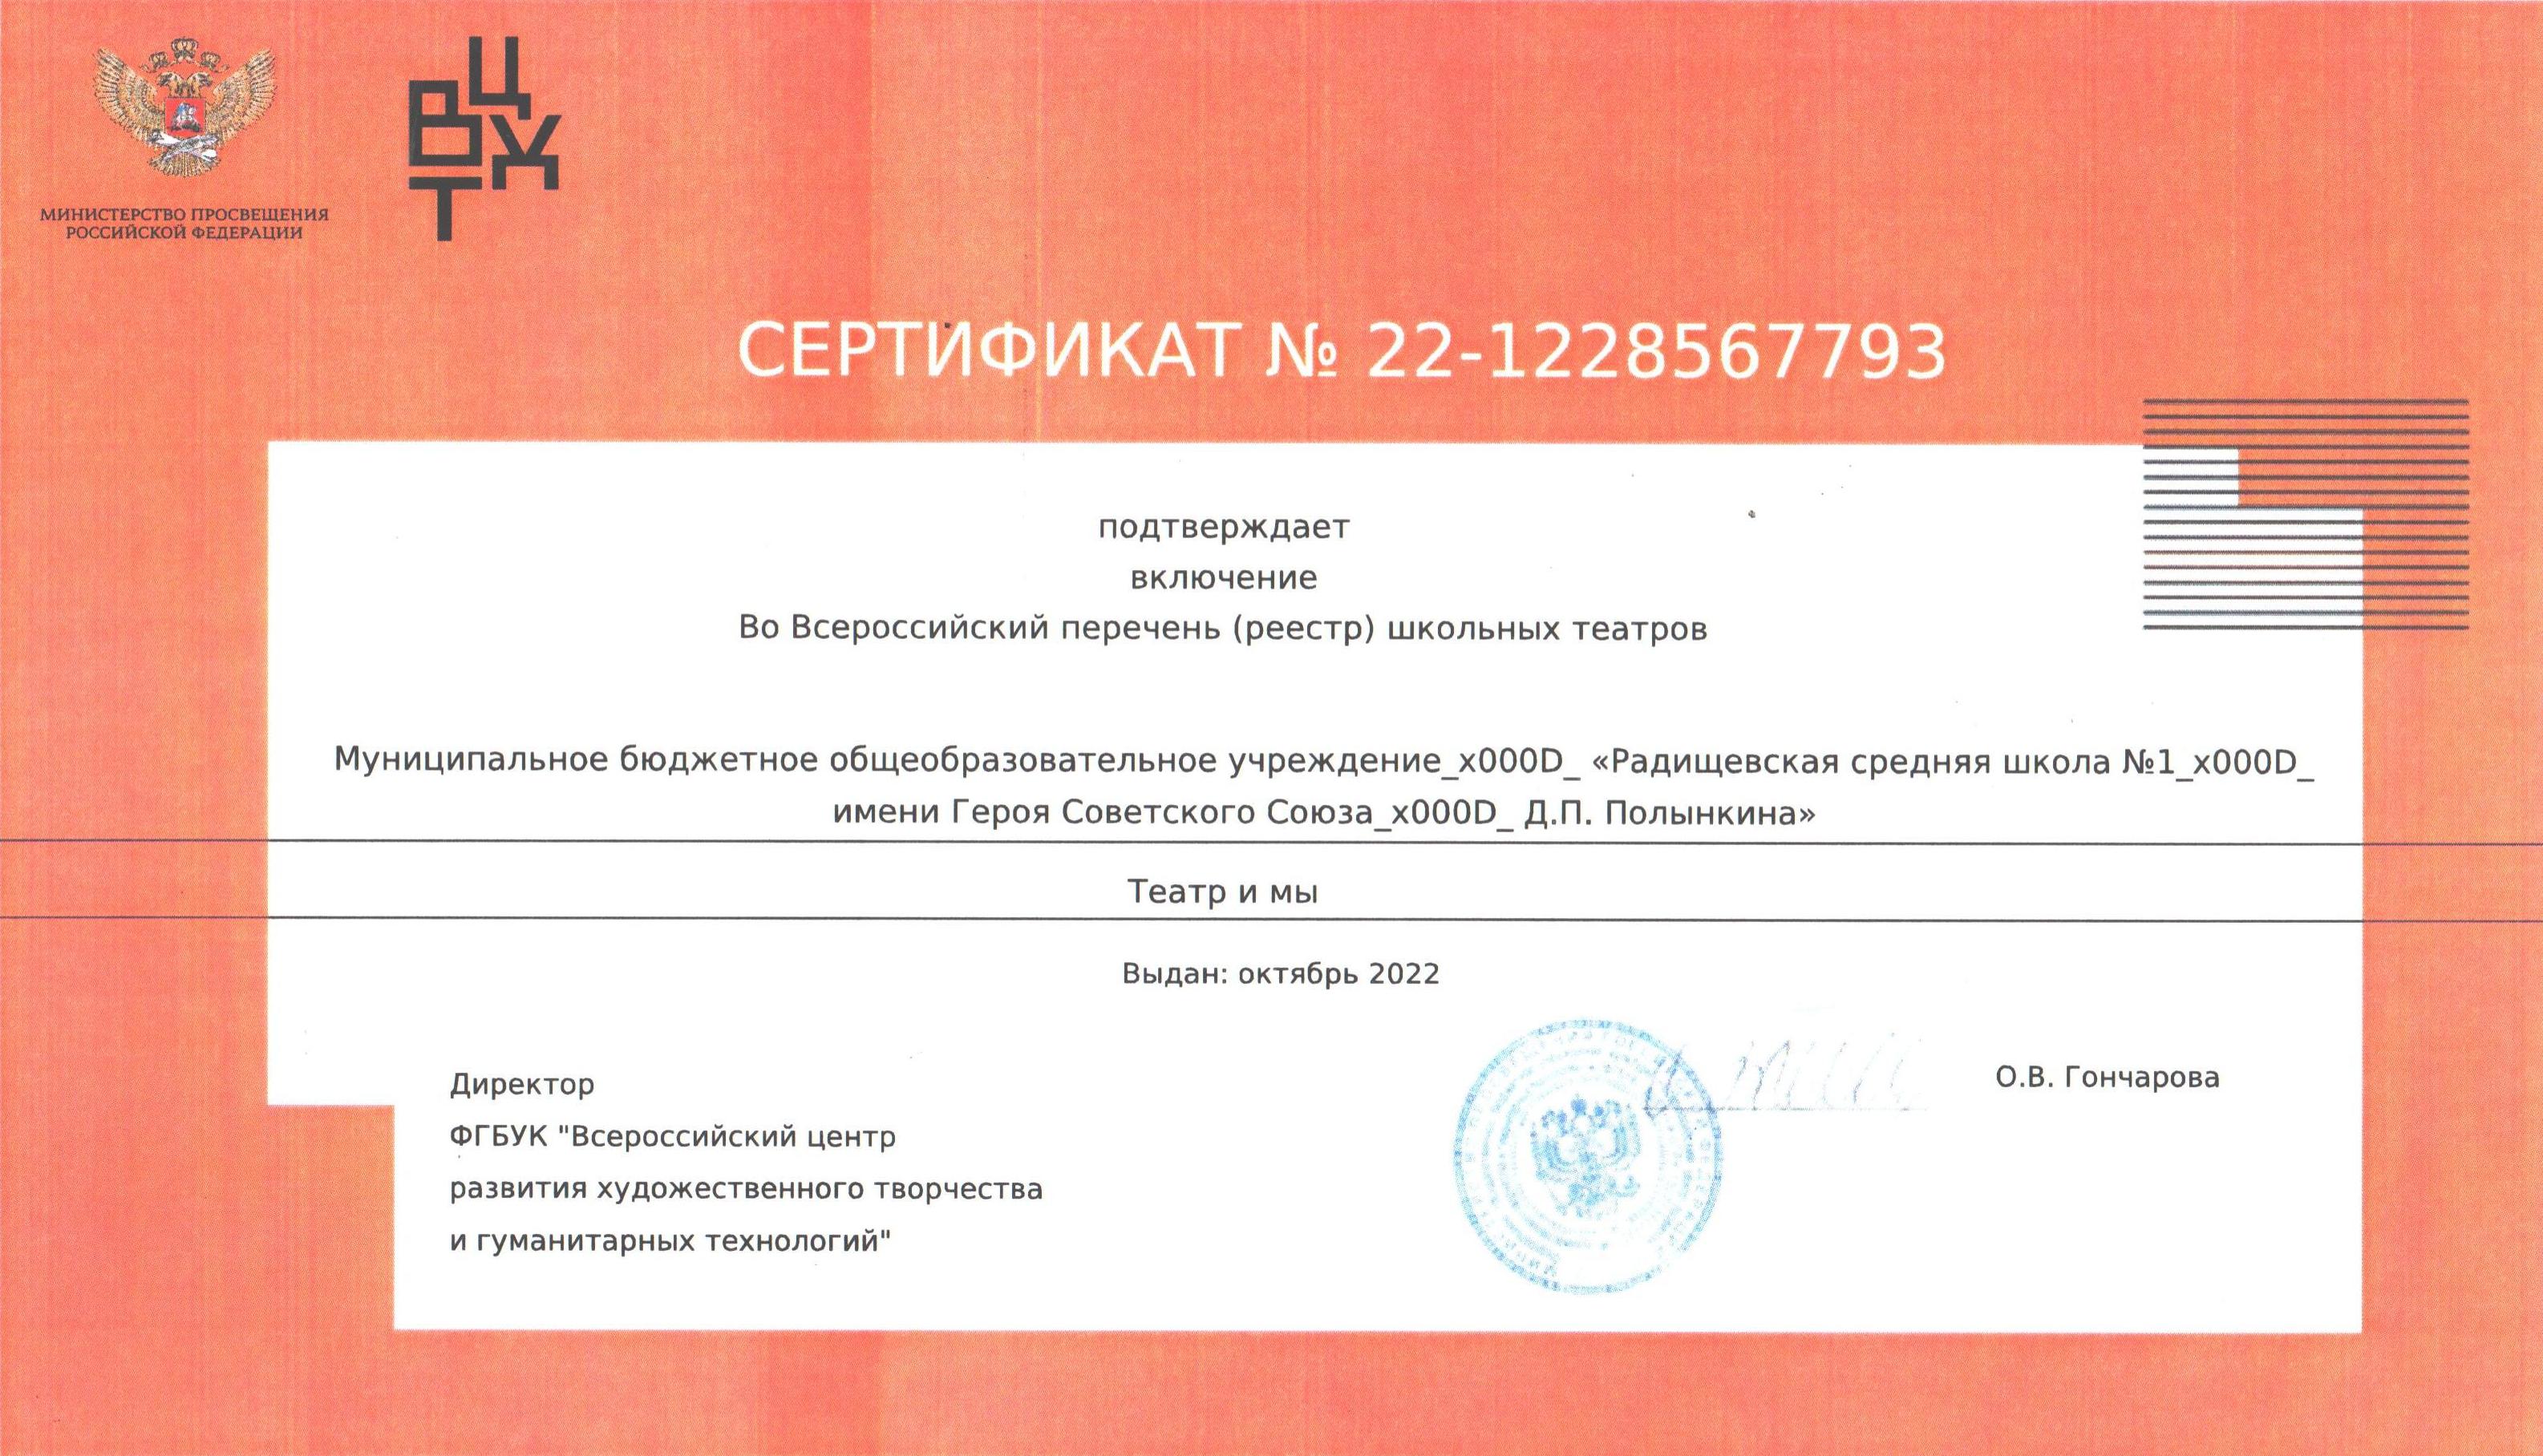 Сертификат школьного театра Радищевской сш №1